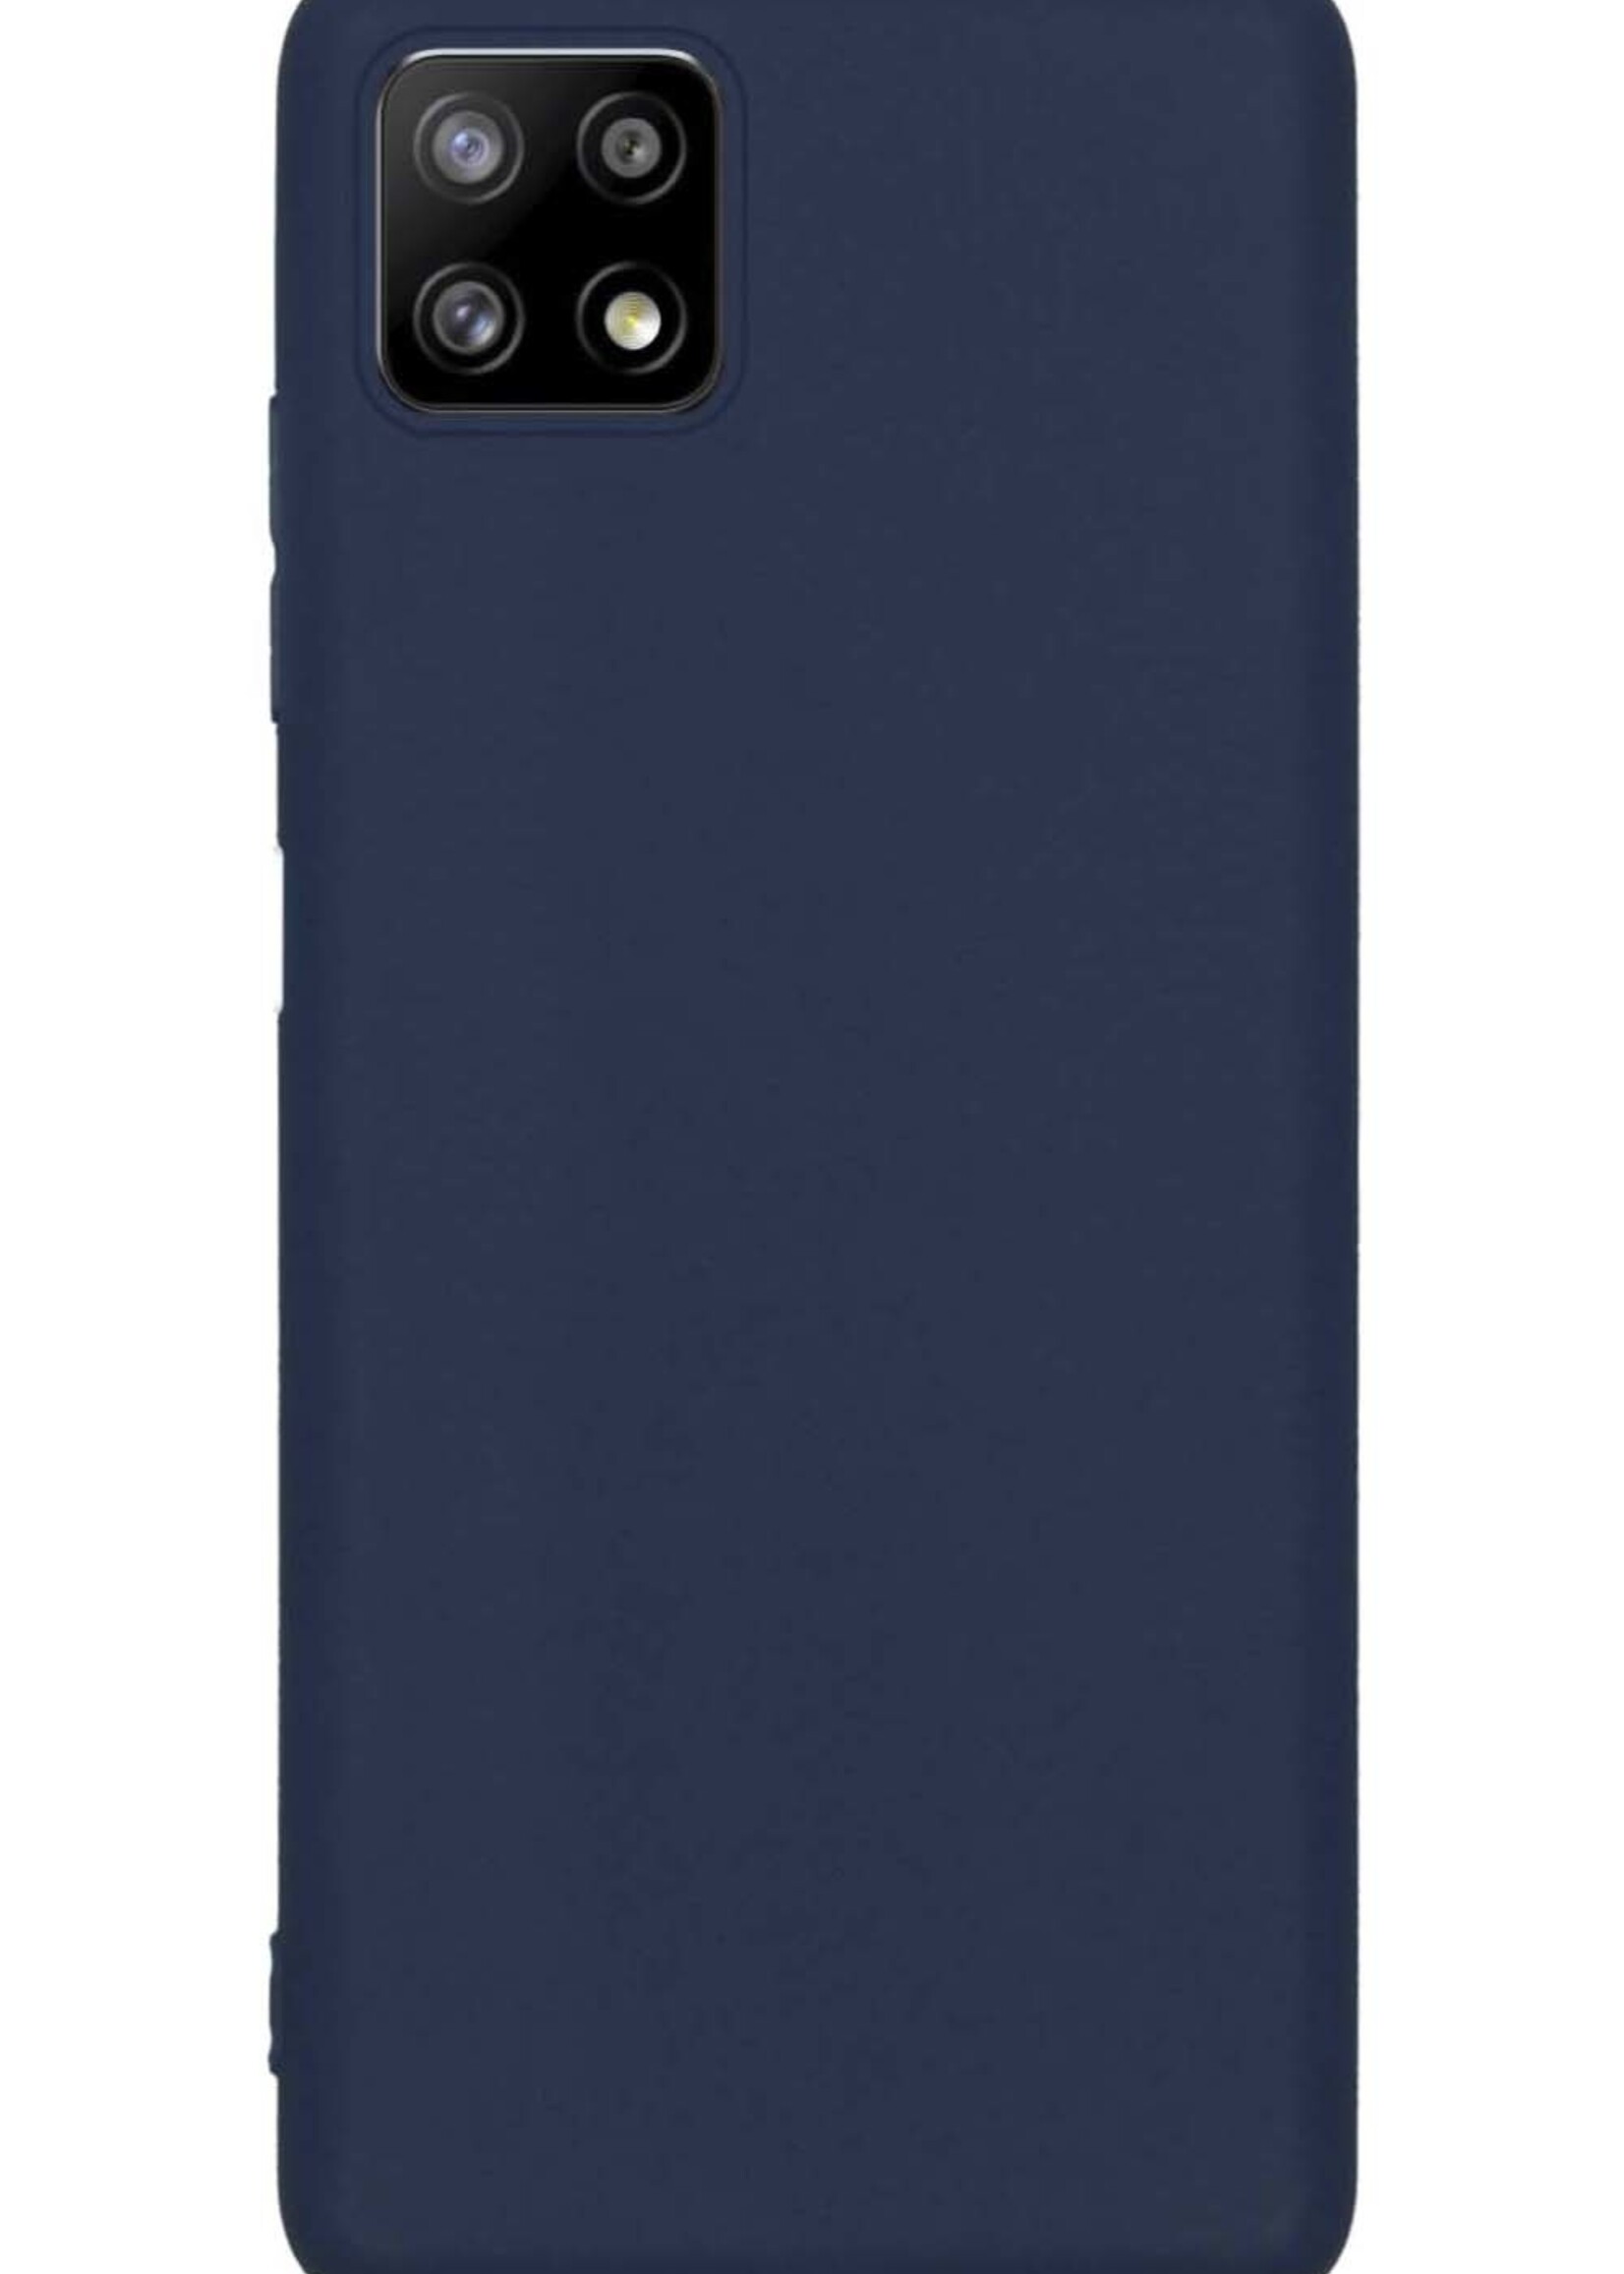 BTH Hoesje Geschikt voor Samsung M22 Hoesje Siliconen Case Hoes - Hoes Geschikt voor Samsung Galaxy M22 Hoes Cover Case - Donkerblauw - 2 PACK